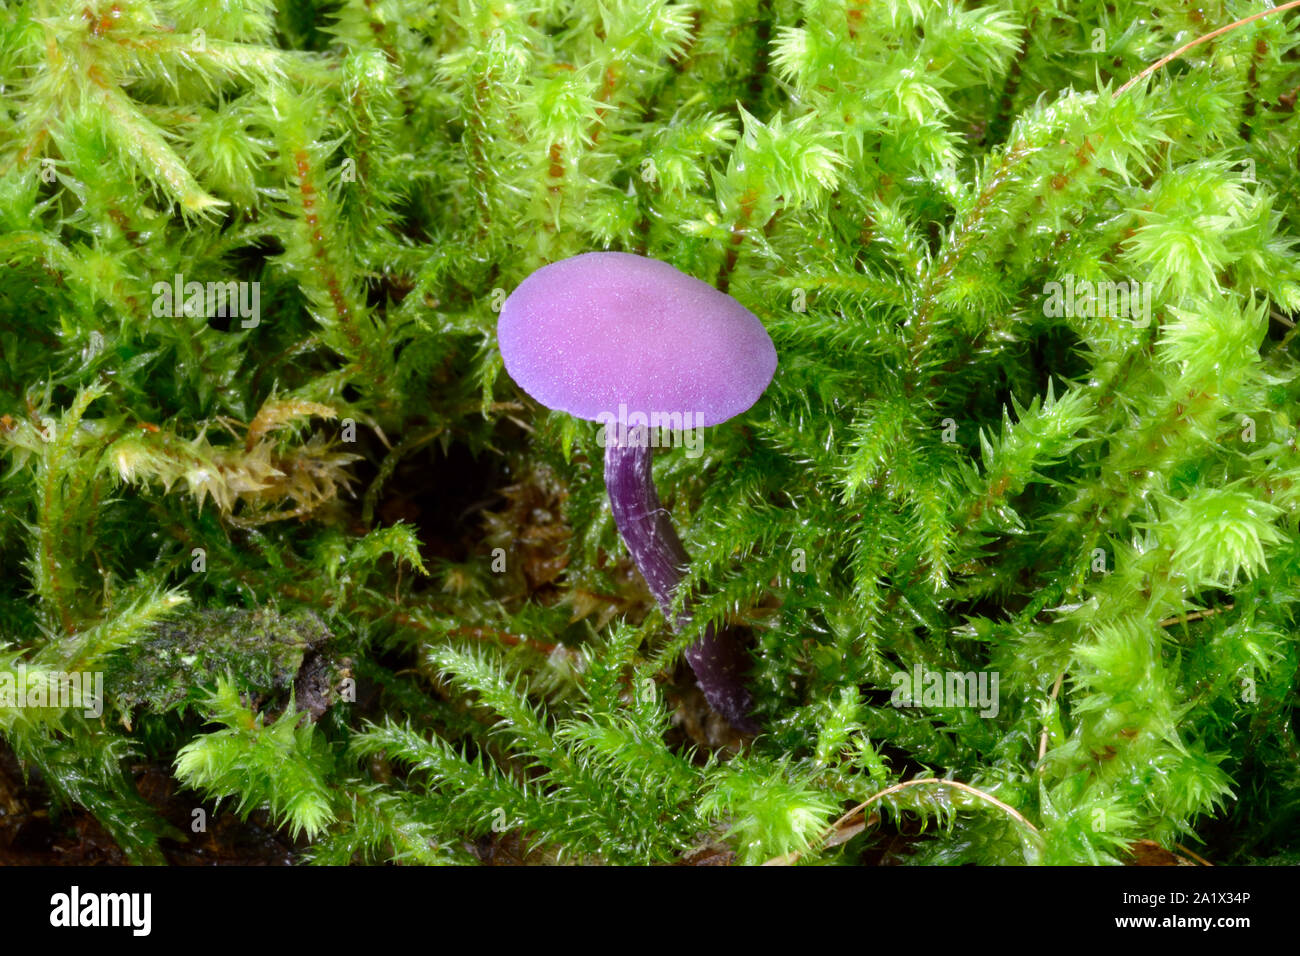 Laccaria amethystina (amethyst deceiver) est un petit champignon violet, qui pousse dans les forêts de conifères et feuillus. Ici entre la mousse dans le Nord du Pays de Galles. Banque D'Images